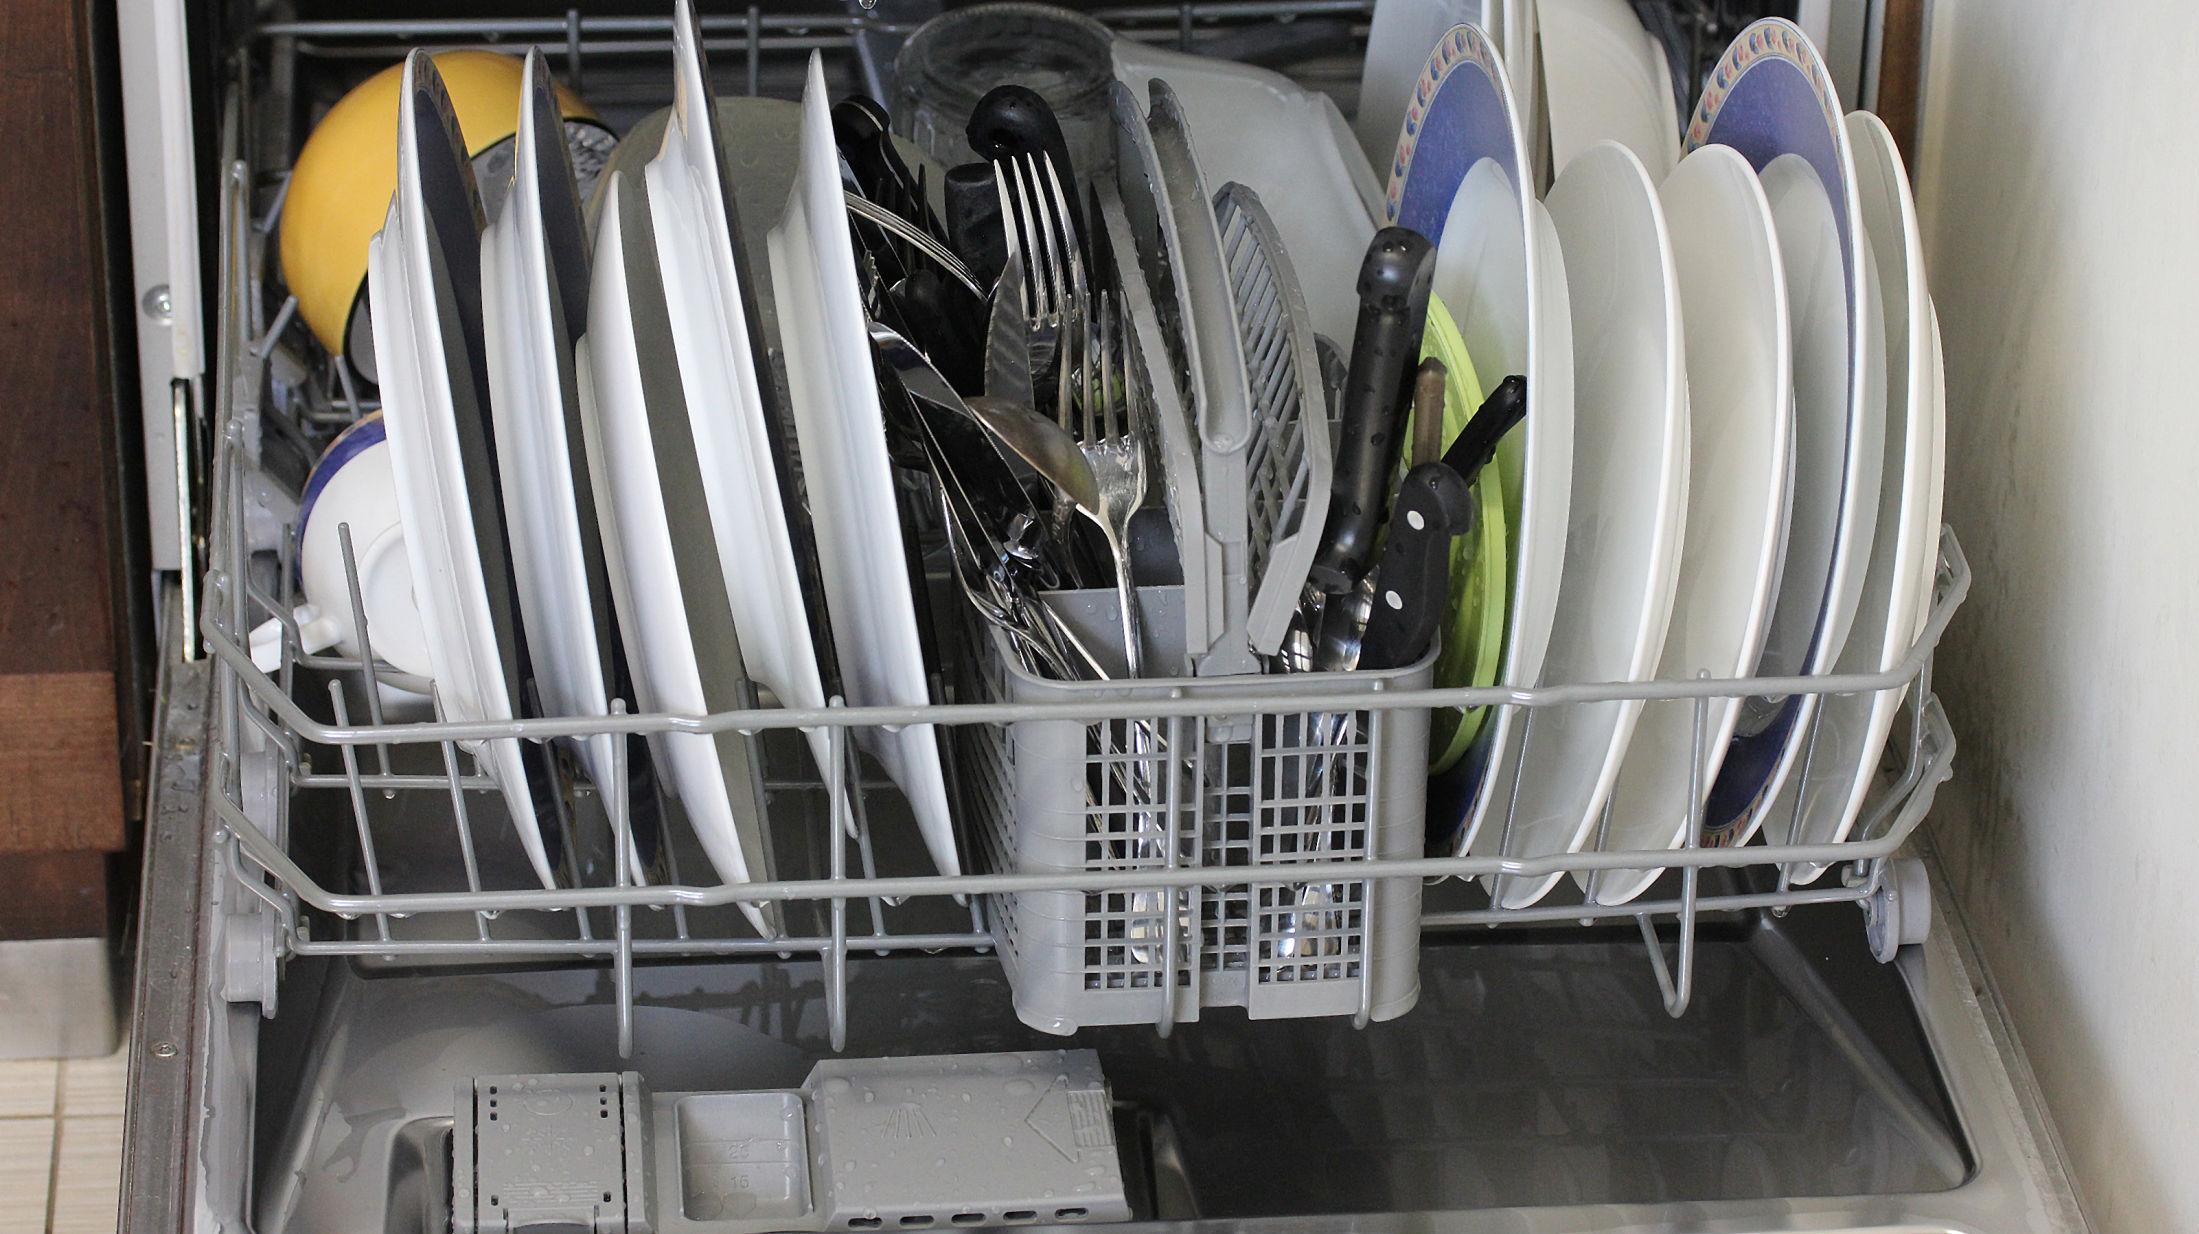 FULL GUFFE: Det lønner seg å kjøre fulle oppvaskmaskiner - både økonomisk og for miljøet sin del. Foto: NTB Scanpix.